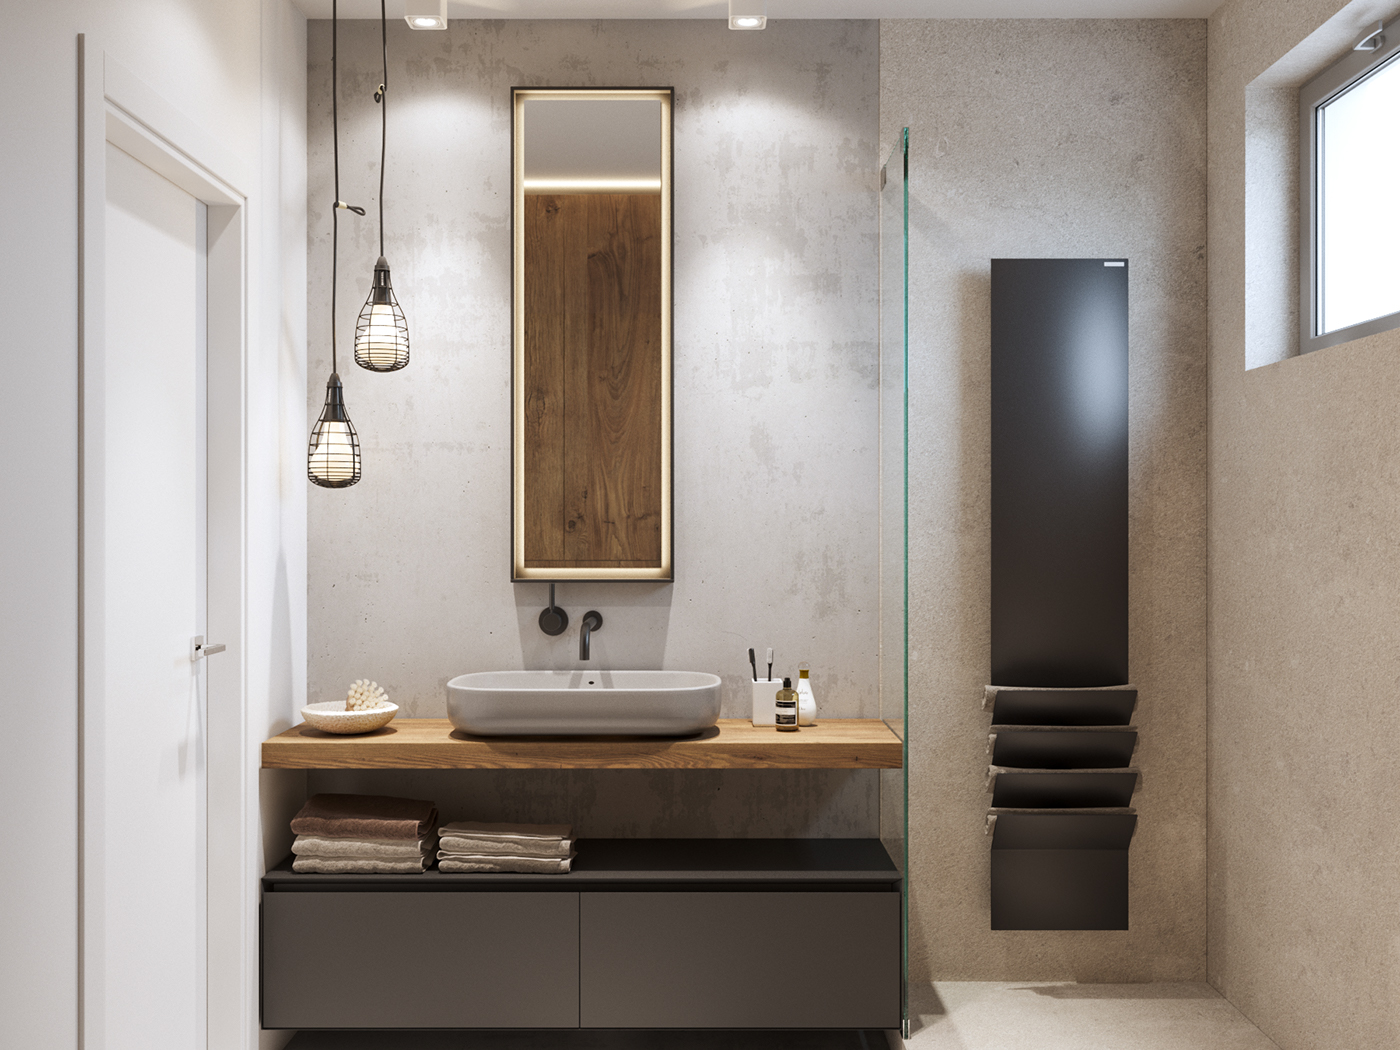 visualization archviz Interior architecture Render 3D CGI rendering kitchen bathroom